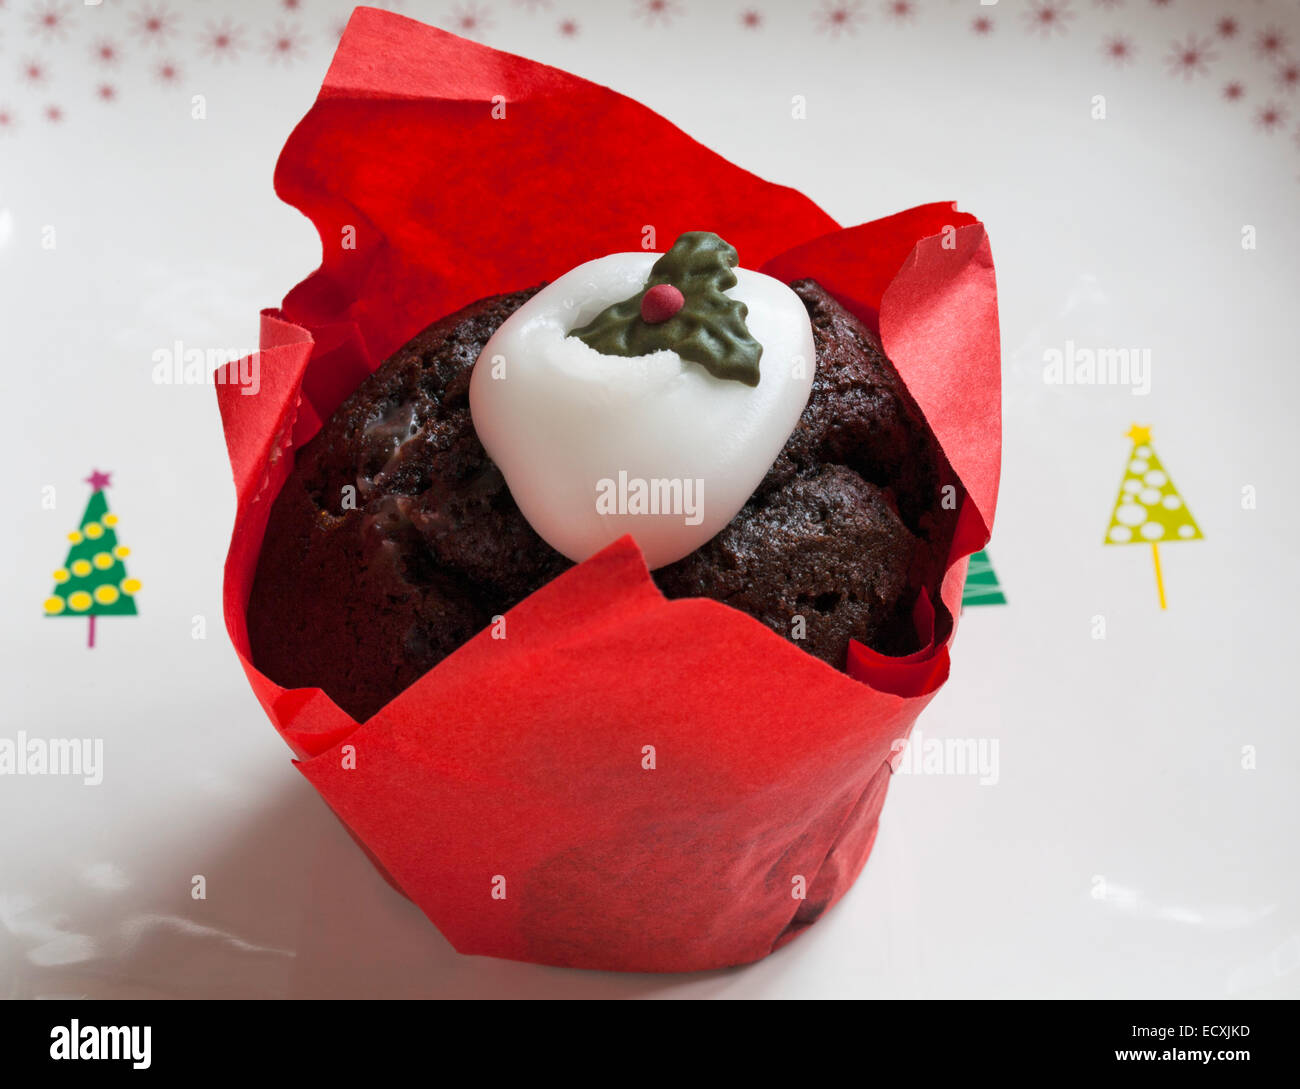 Tesco Merry Christmas Christmas Pudding Muffin on Christmas tree plate Stock Photo